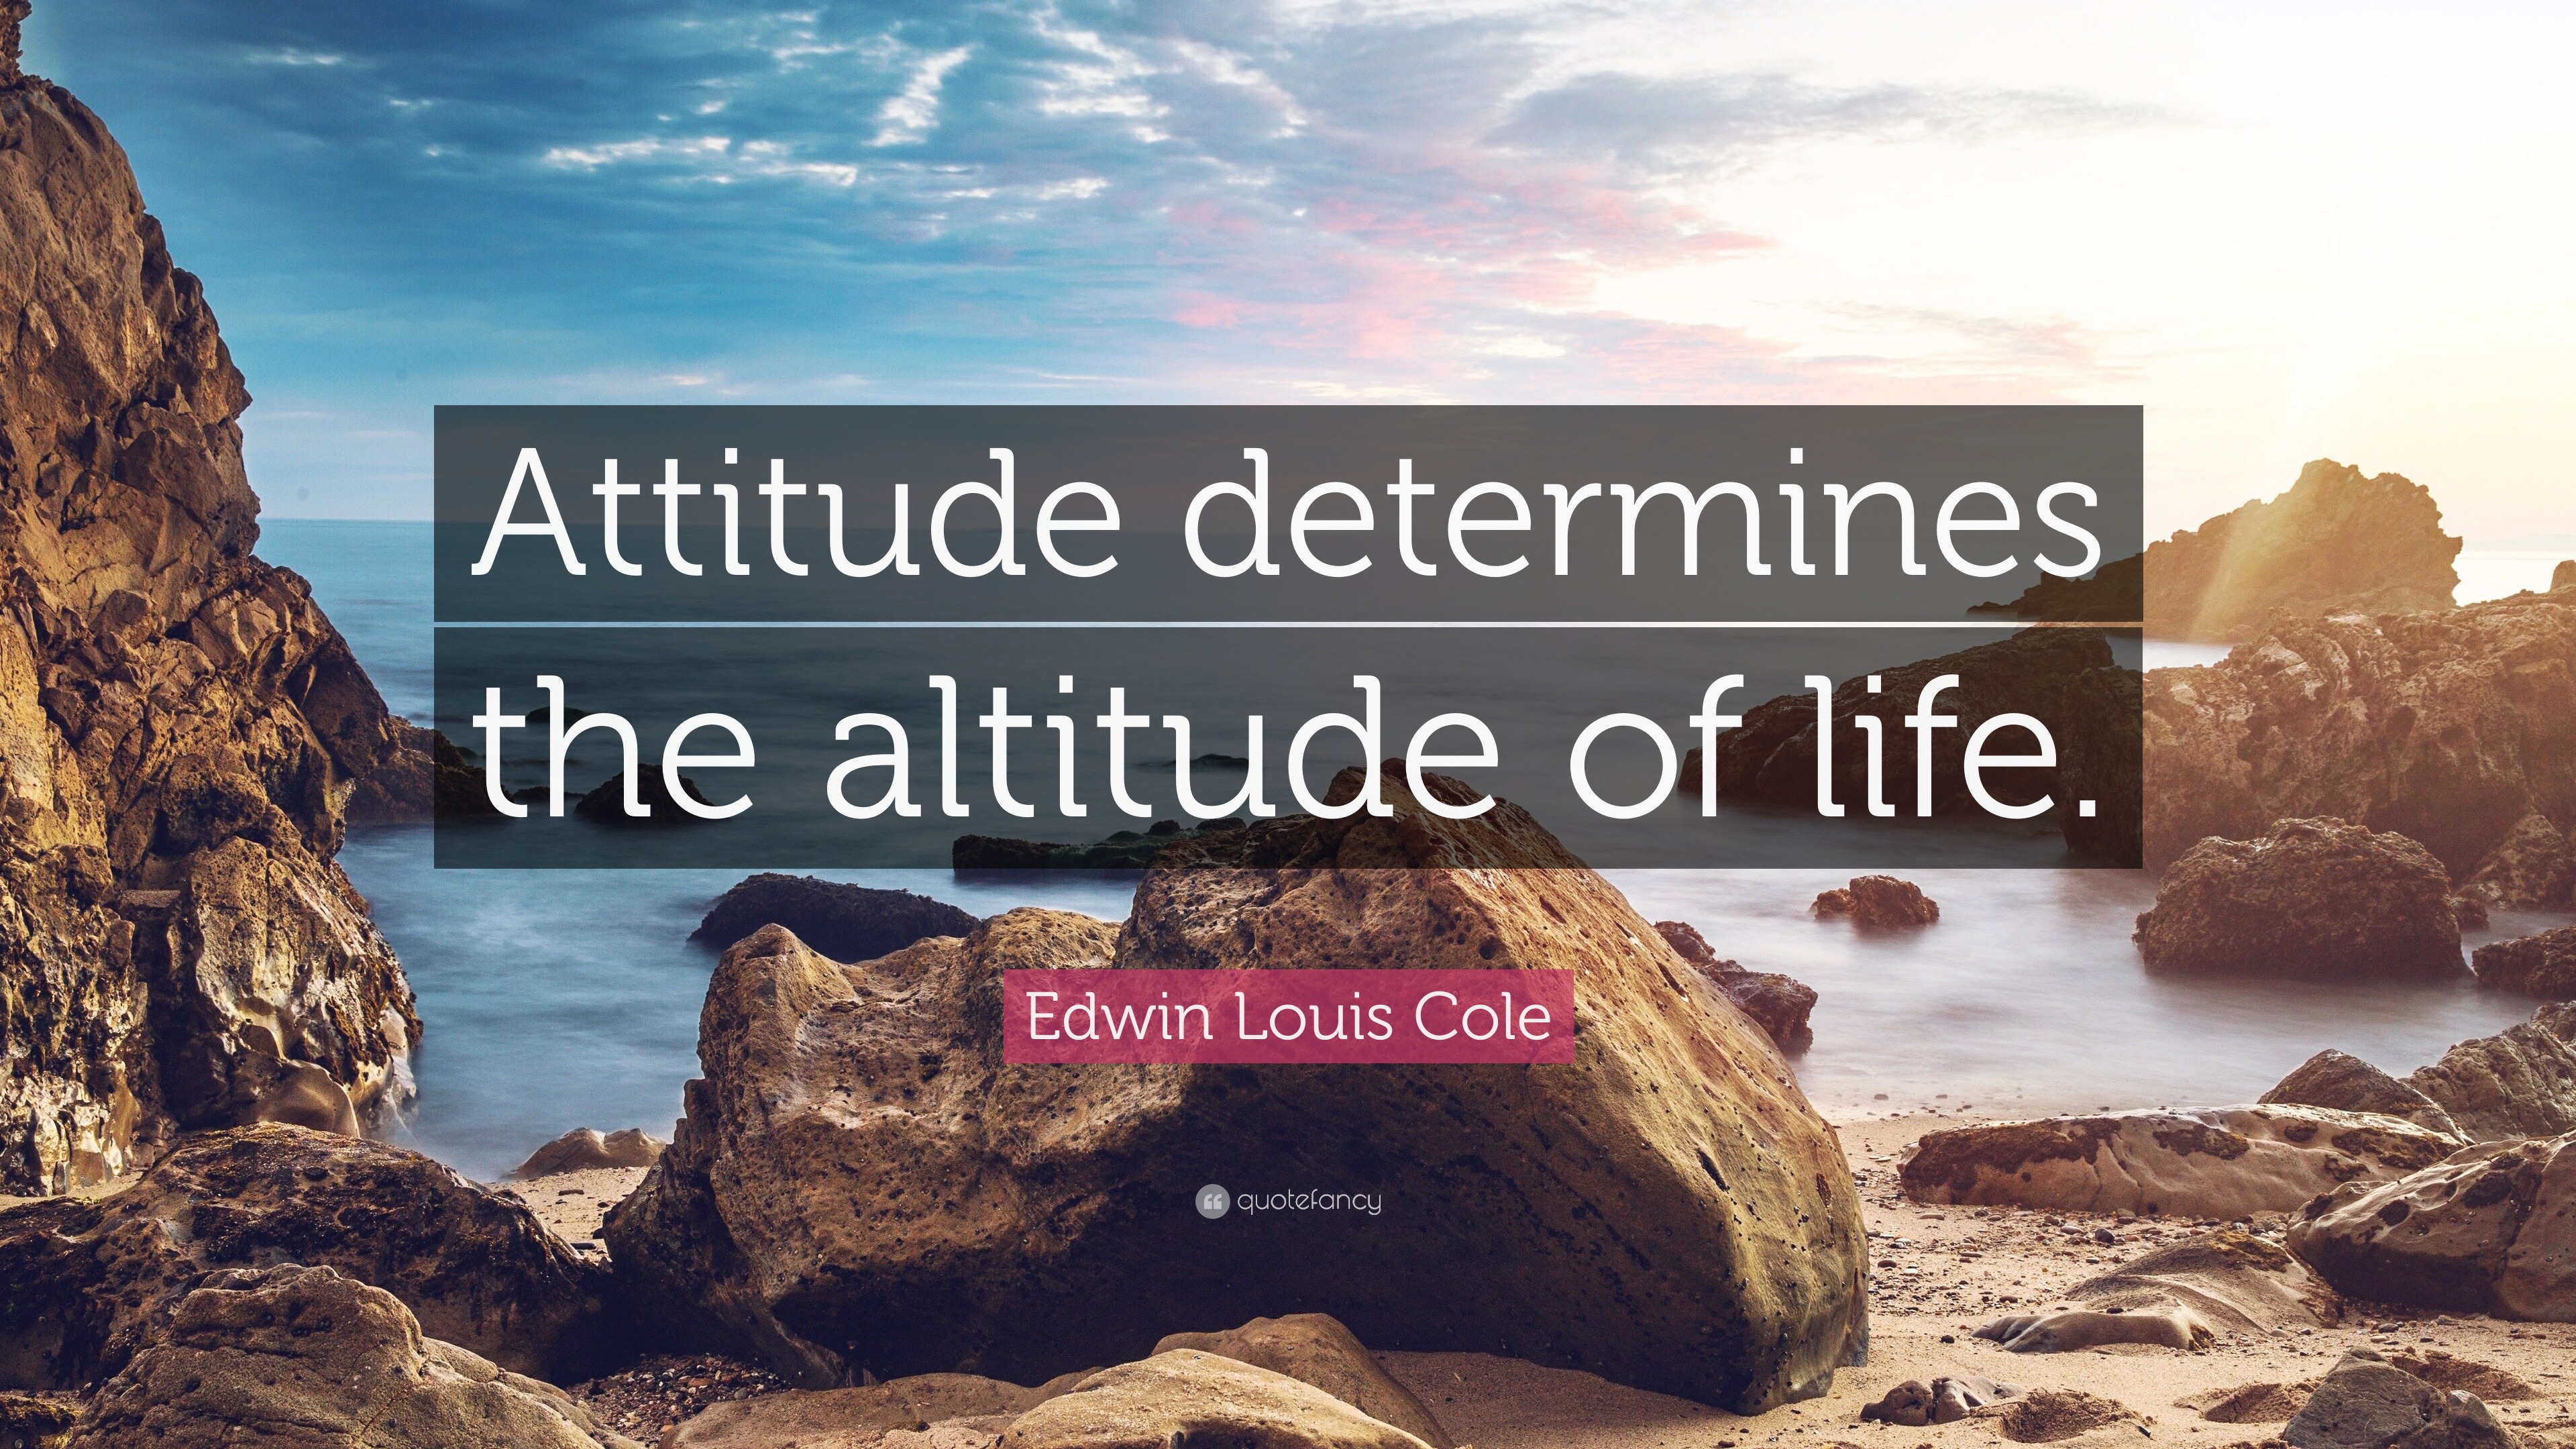 Edwin Louis Cole - Attitude determines the altitude of